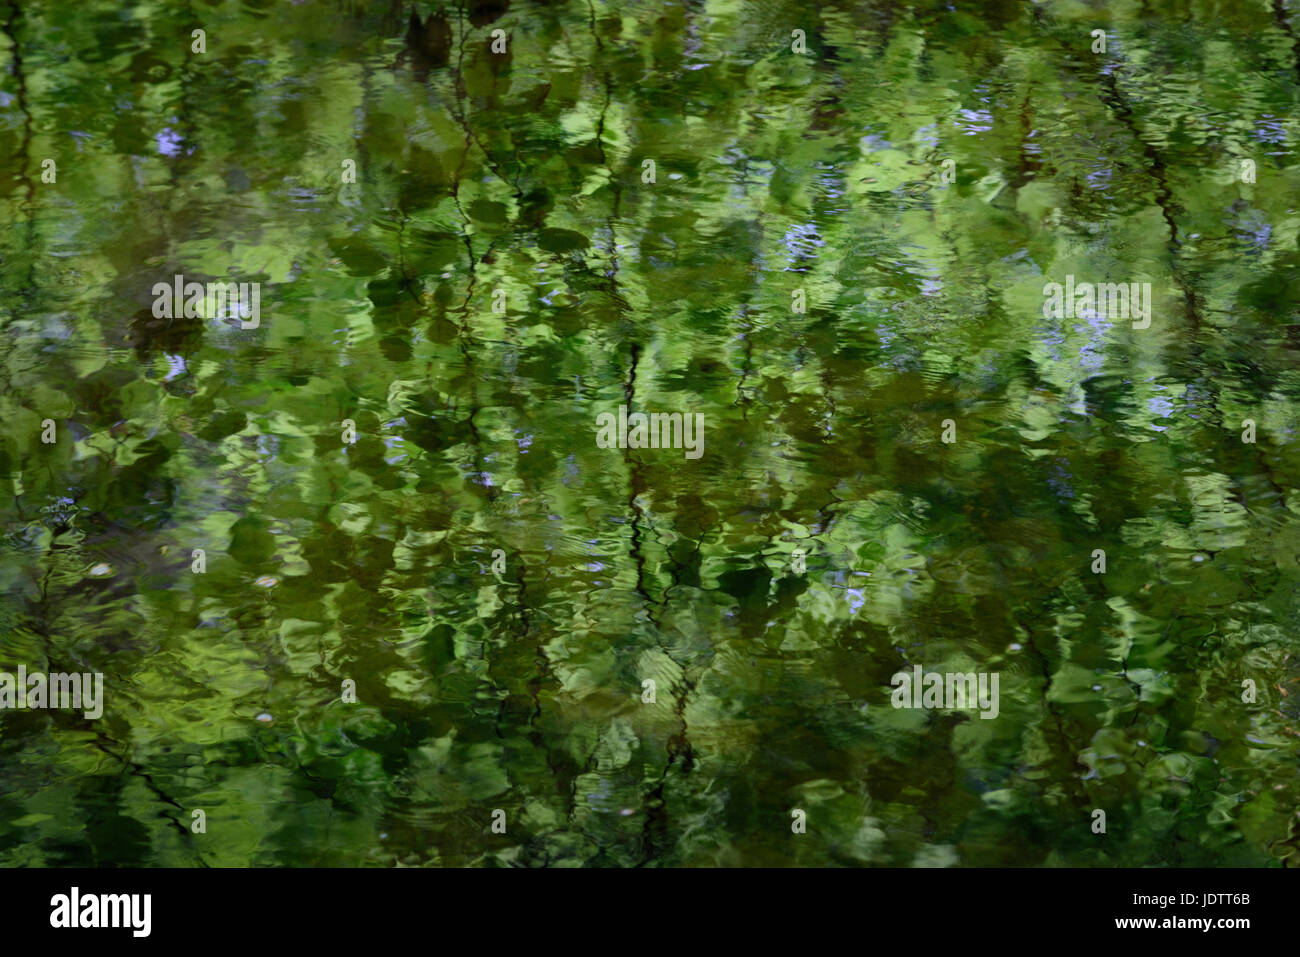 Abstract paesaggio impressionista immagine raffigurante la riflessione di alberi e foglie in acqua di un fiume o lago Foto Stock